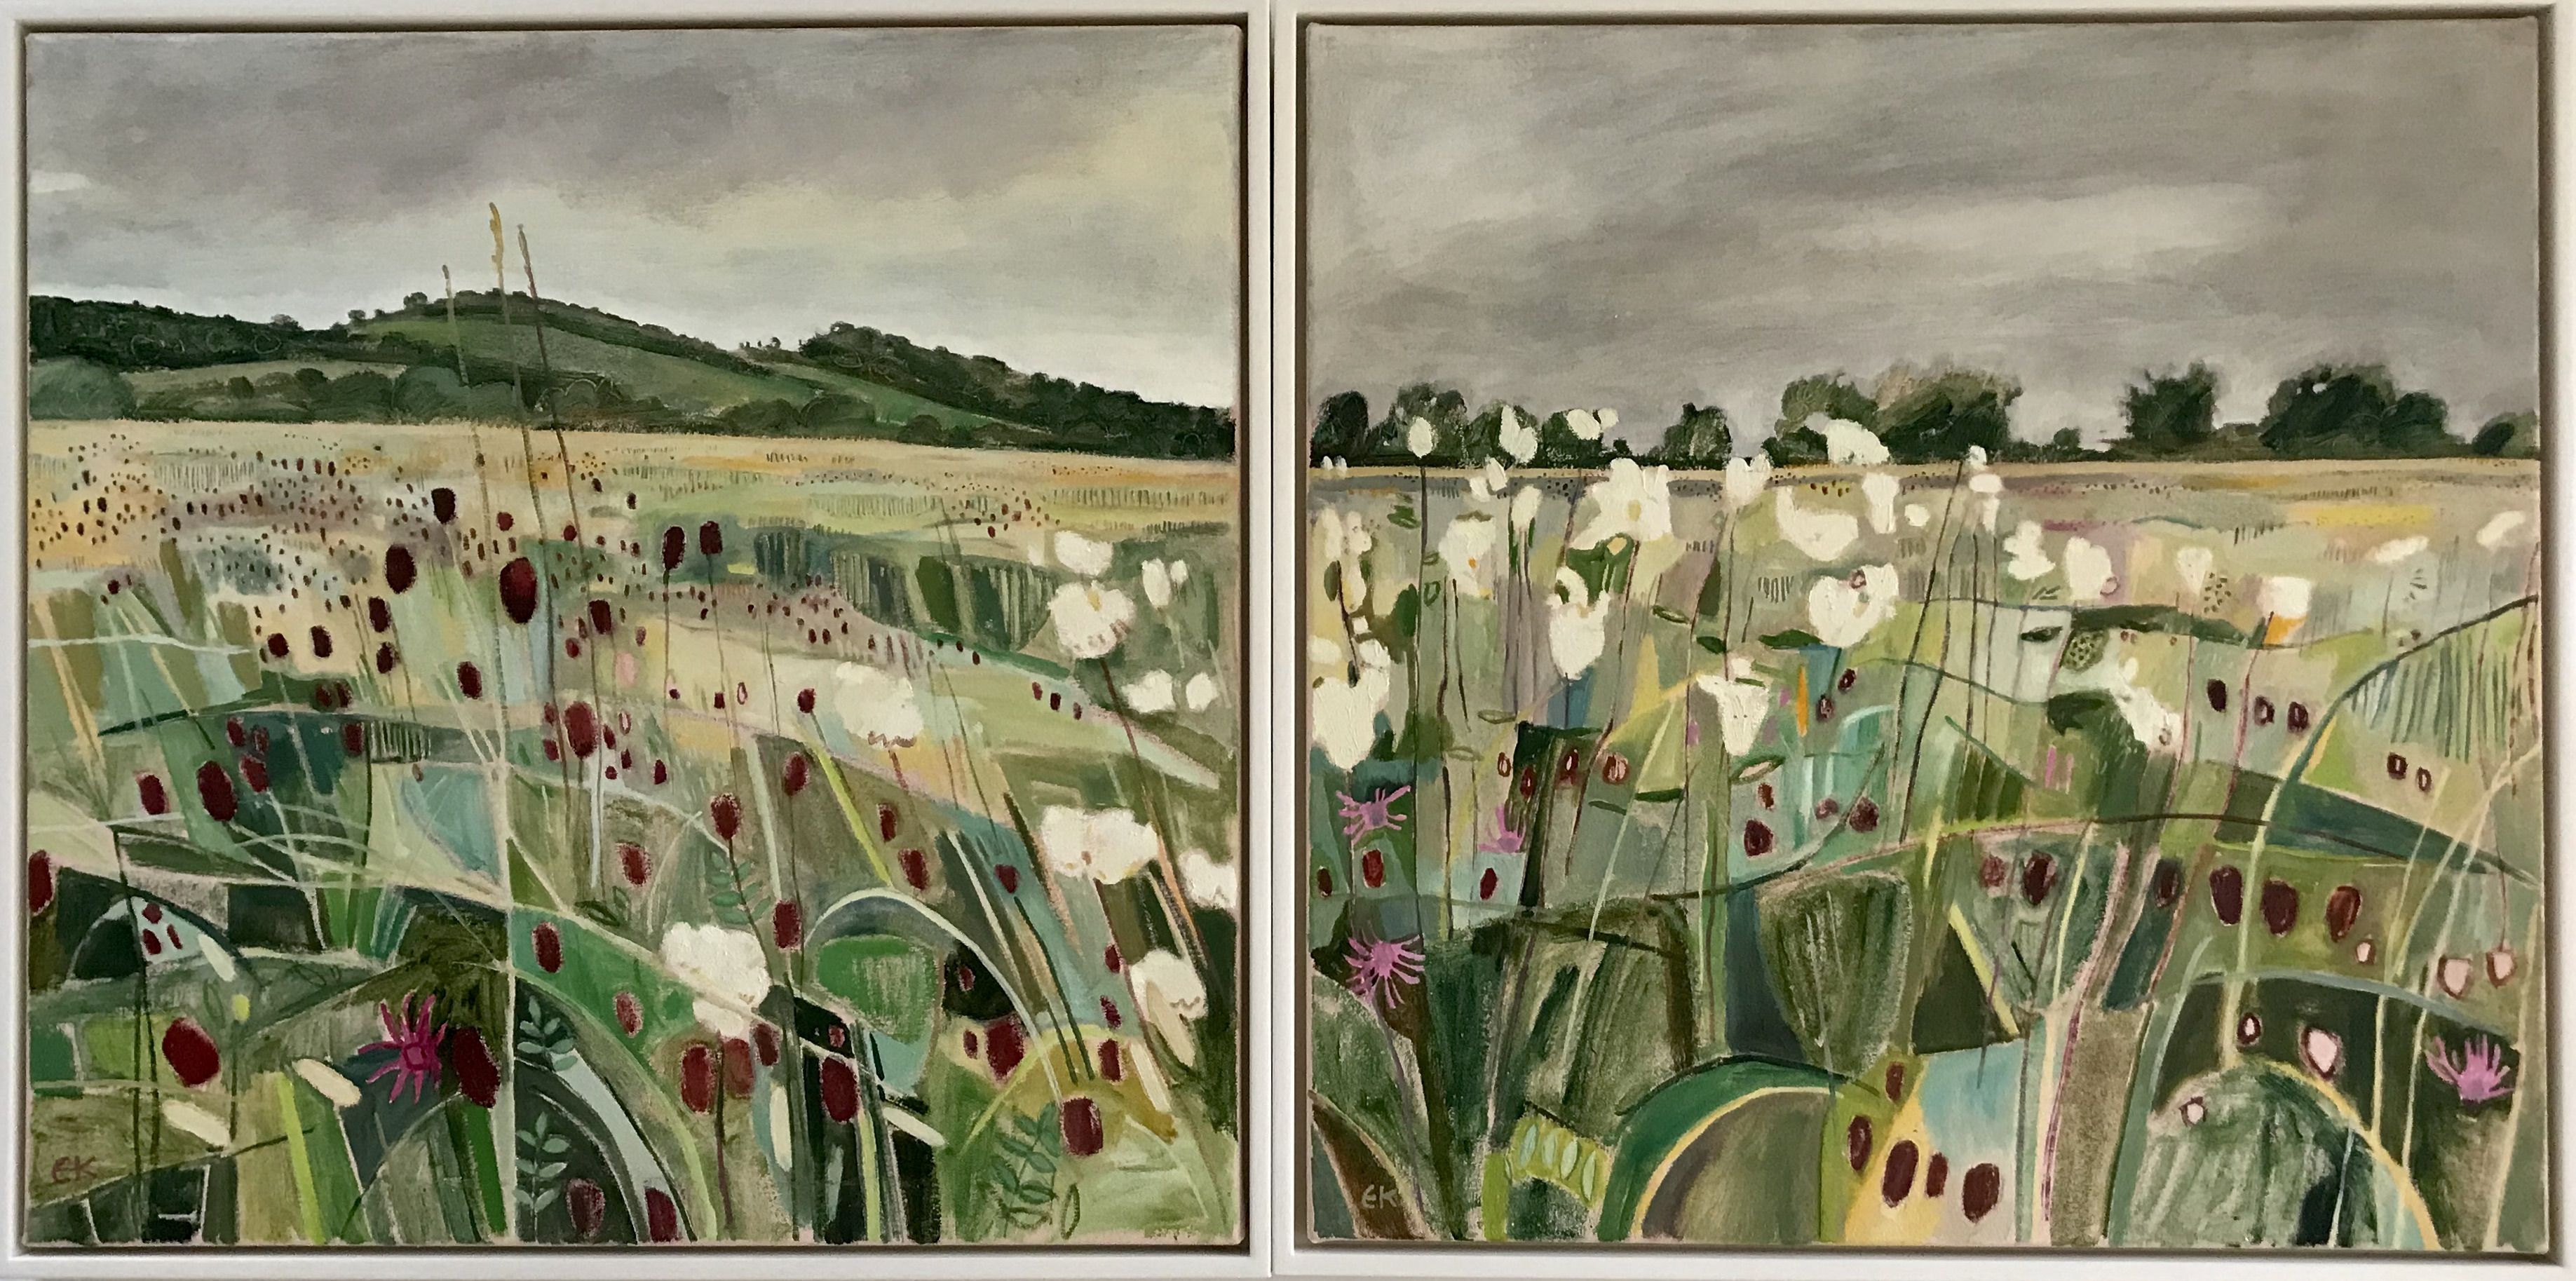 Long Mead Meadow with Burnet and Astilbe by Elaine Kazimierczuk